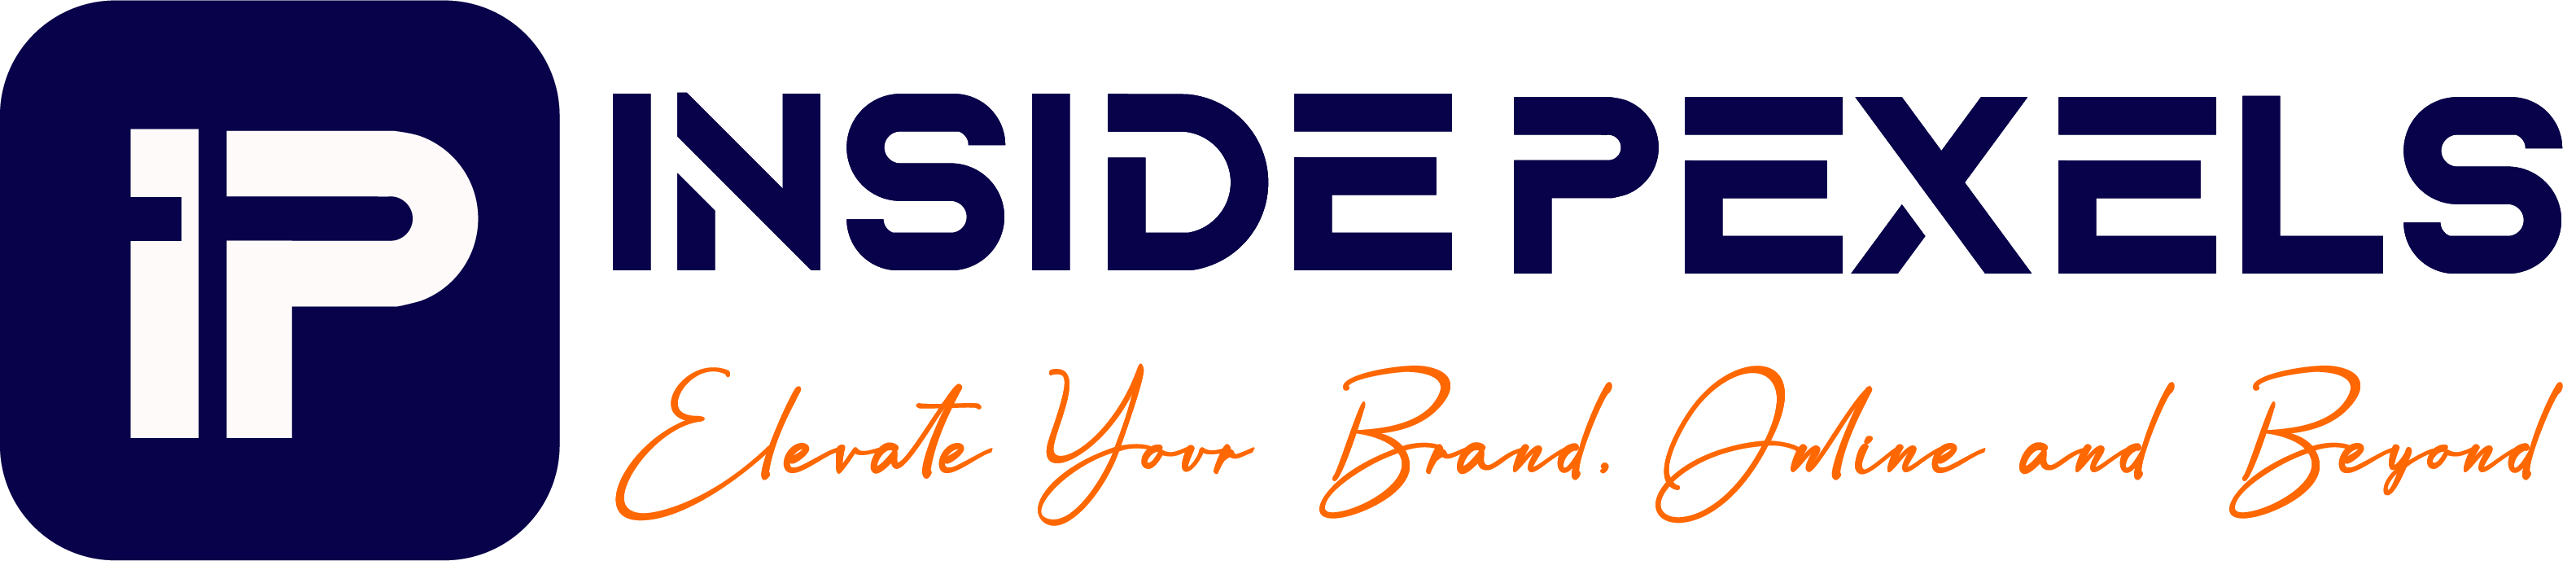 Inside logo